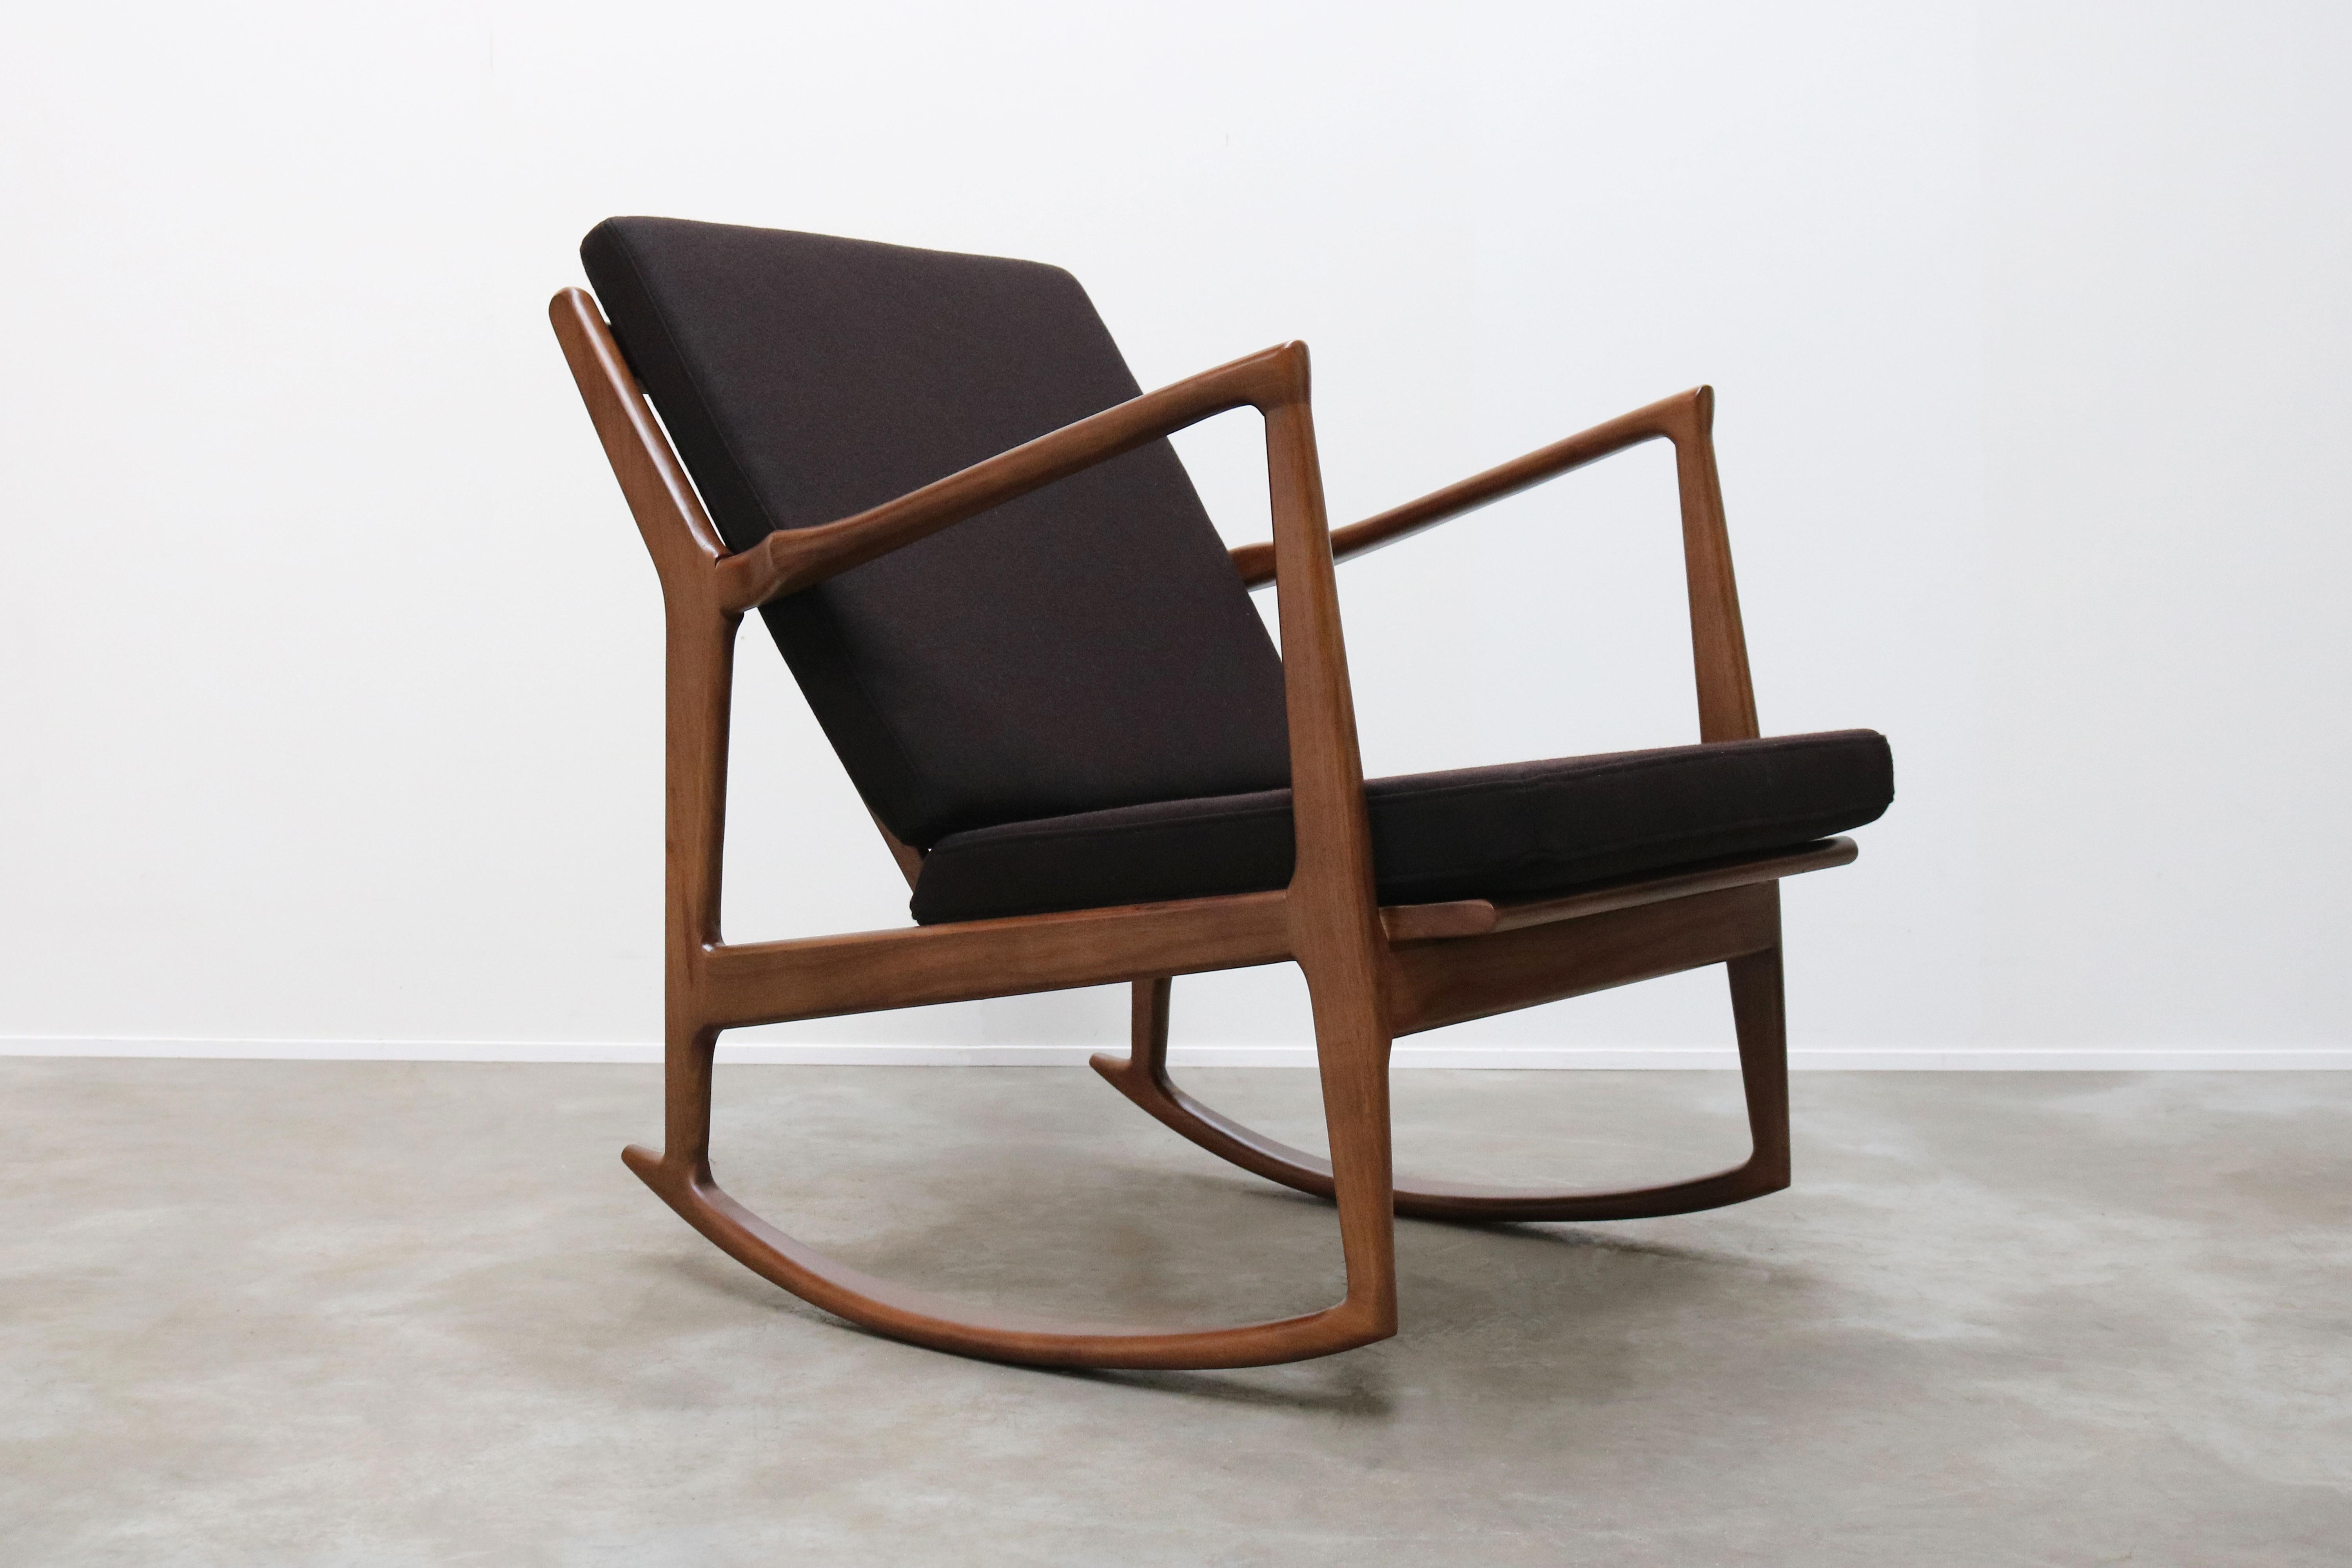 Aus unserer eigenen Werkstatt und Designkollektion stammt dieser wunderschöne Schaukelstuhl im dänischen Stil von 1950.
Aus massivem Nussbaumholz mit brauner Kaschmir-Polsterung. Der Schaukelstuhl sieht toll aus und ist sehr bequem
Toll als